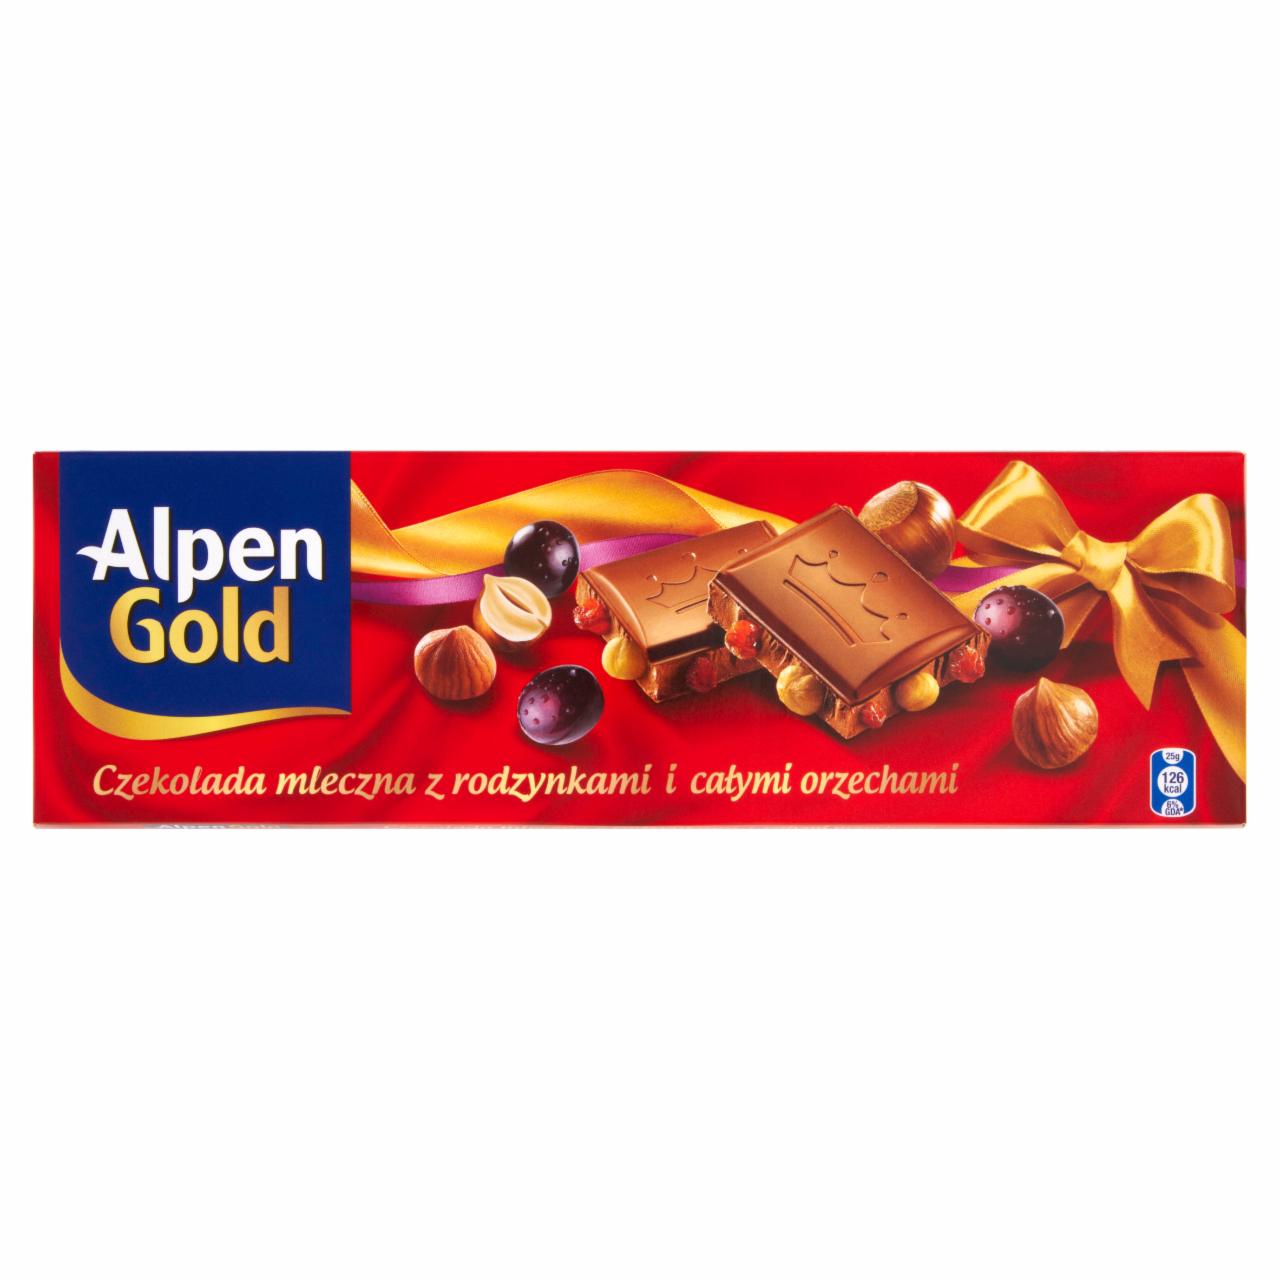 Zdjęcia - Alpen Gold Czekolada mleczna z rodzynkami i całymi orzechami 200 g